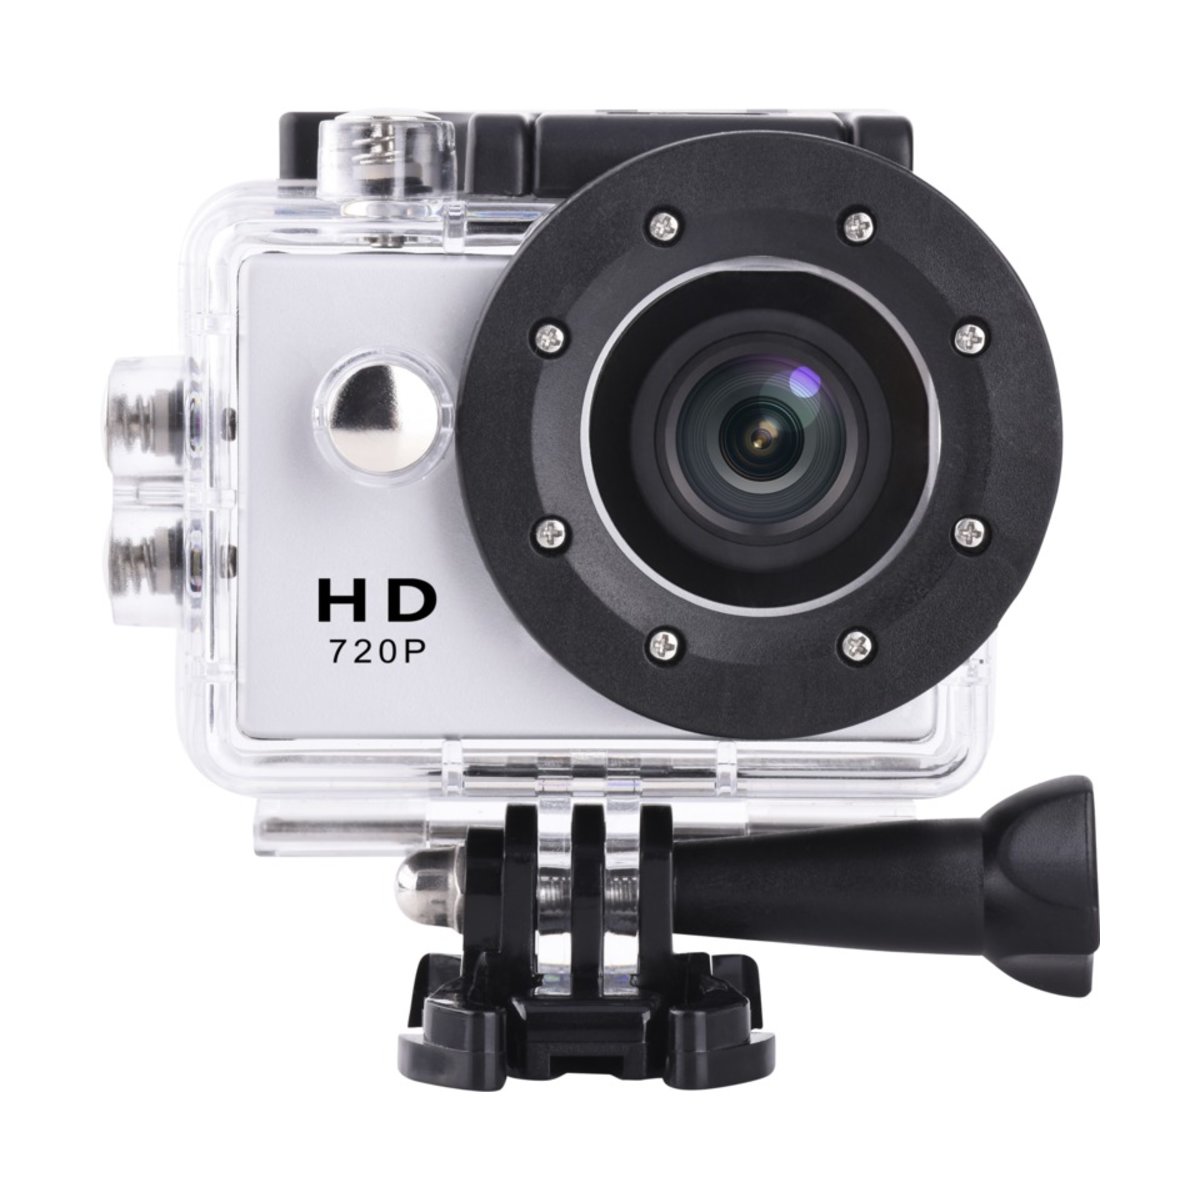 Action Camera DV609